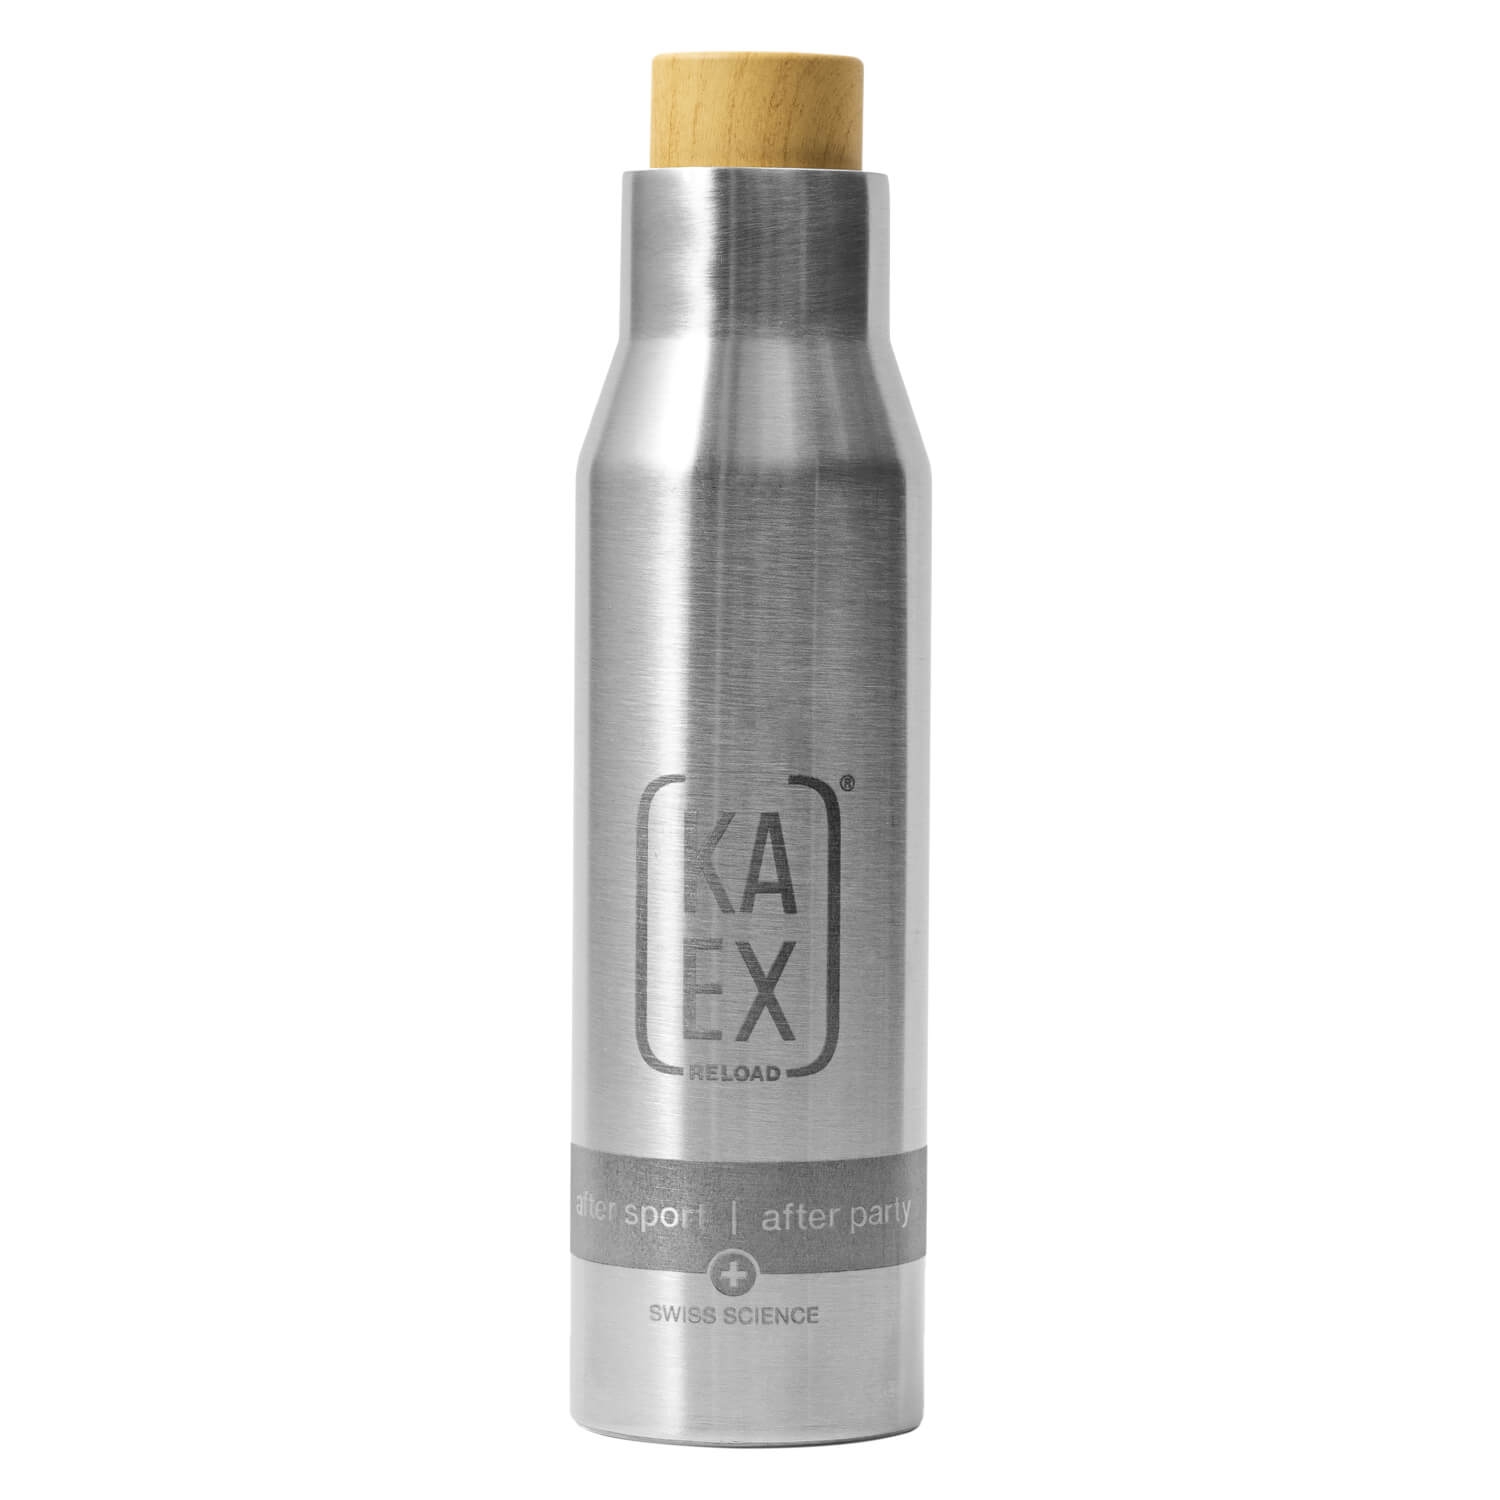 Produktbild von KAEX - Thermoflasche